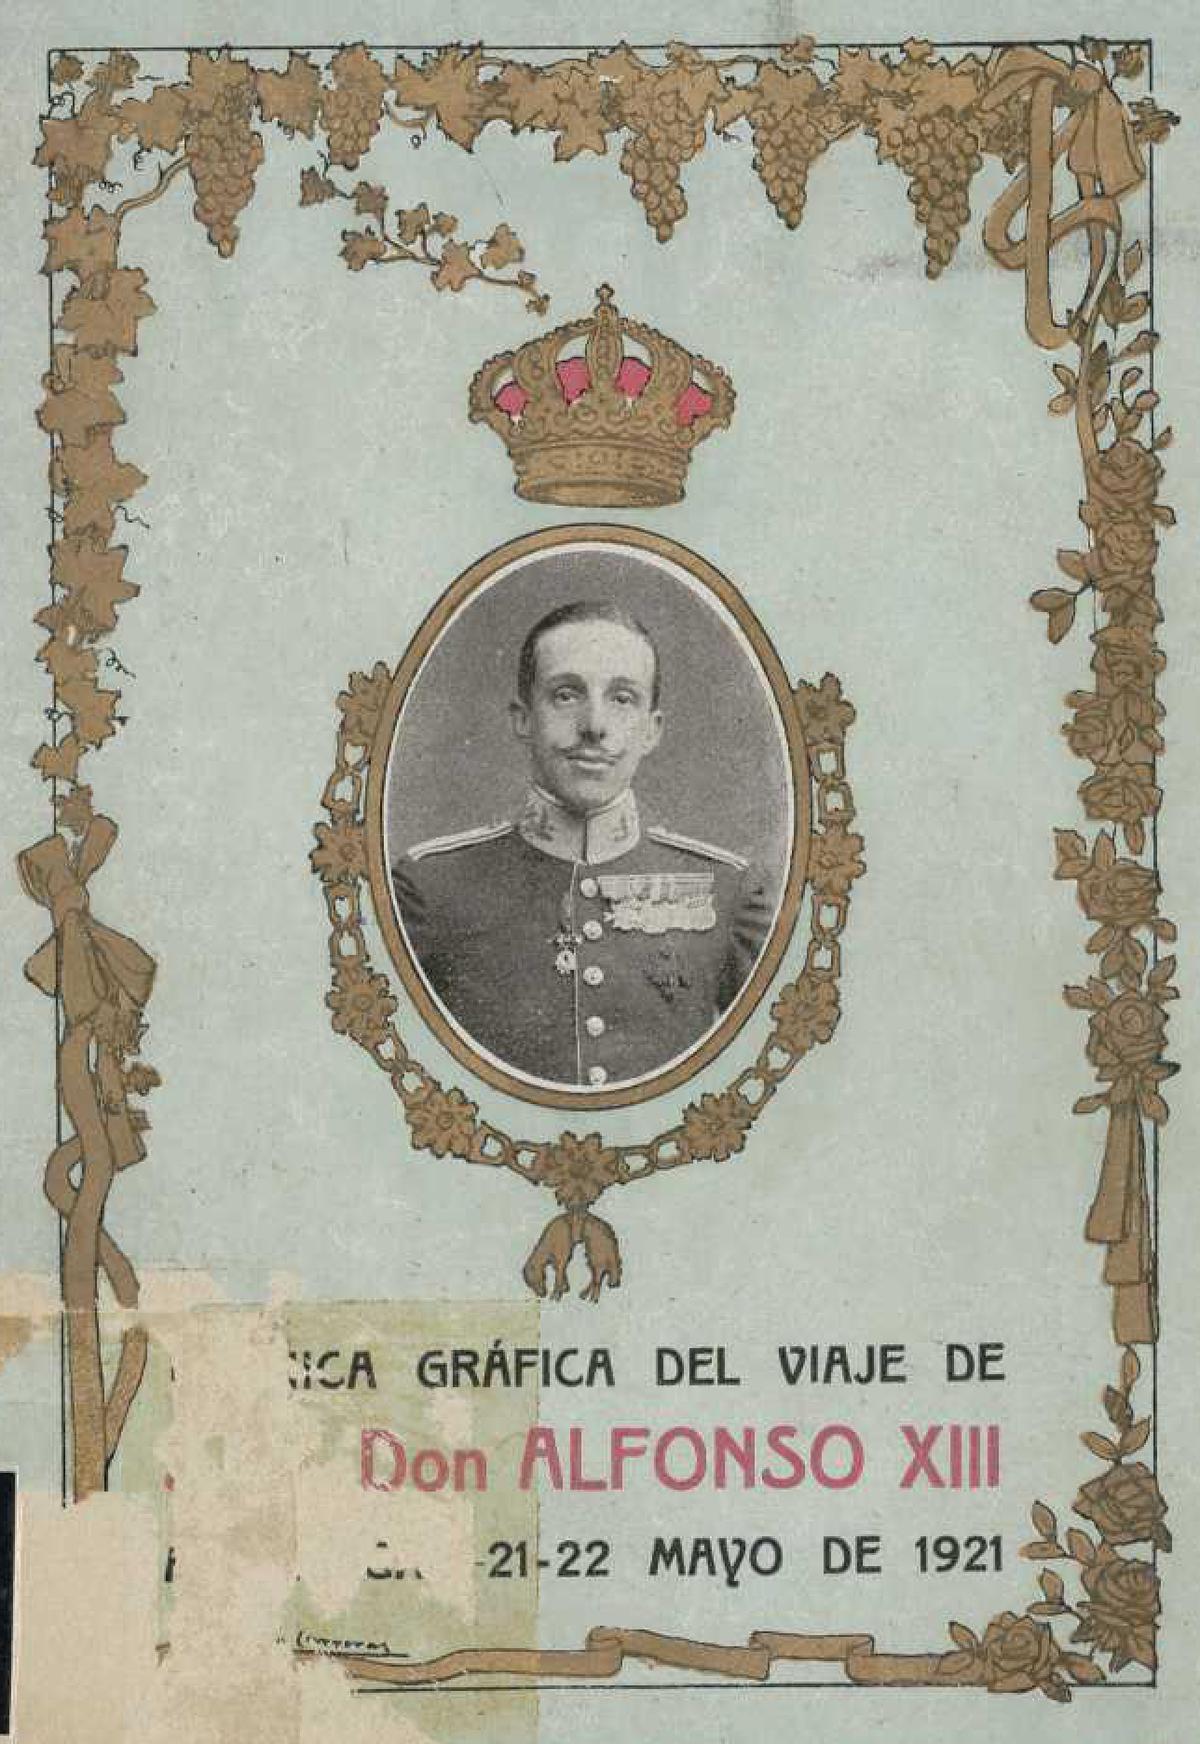 Portada del libro sobre el viaje de Alfonso XIII en 1921, obra de Pedro Alfaro y Rafael Murillo.